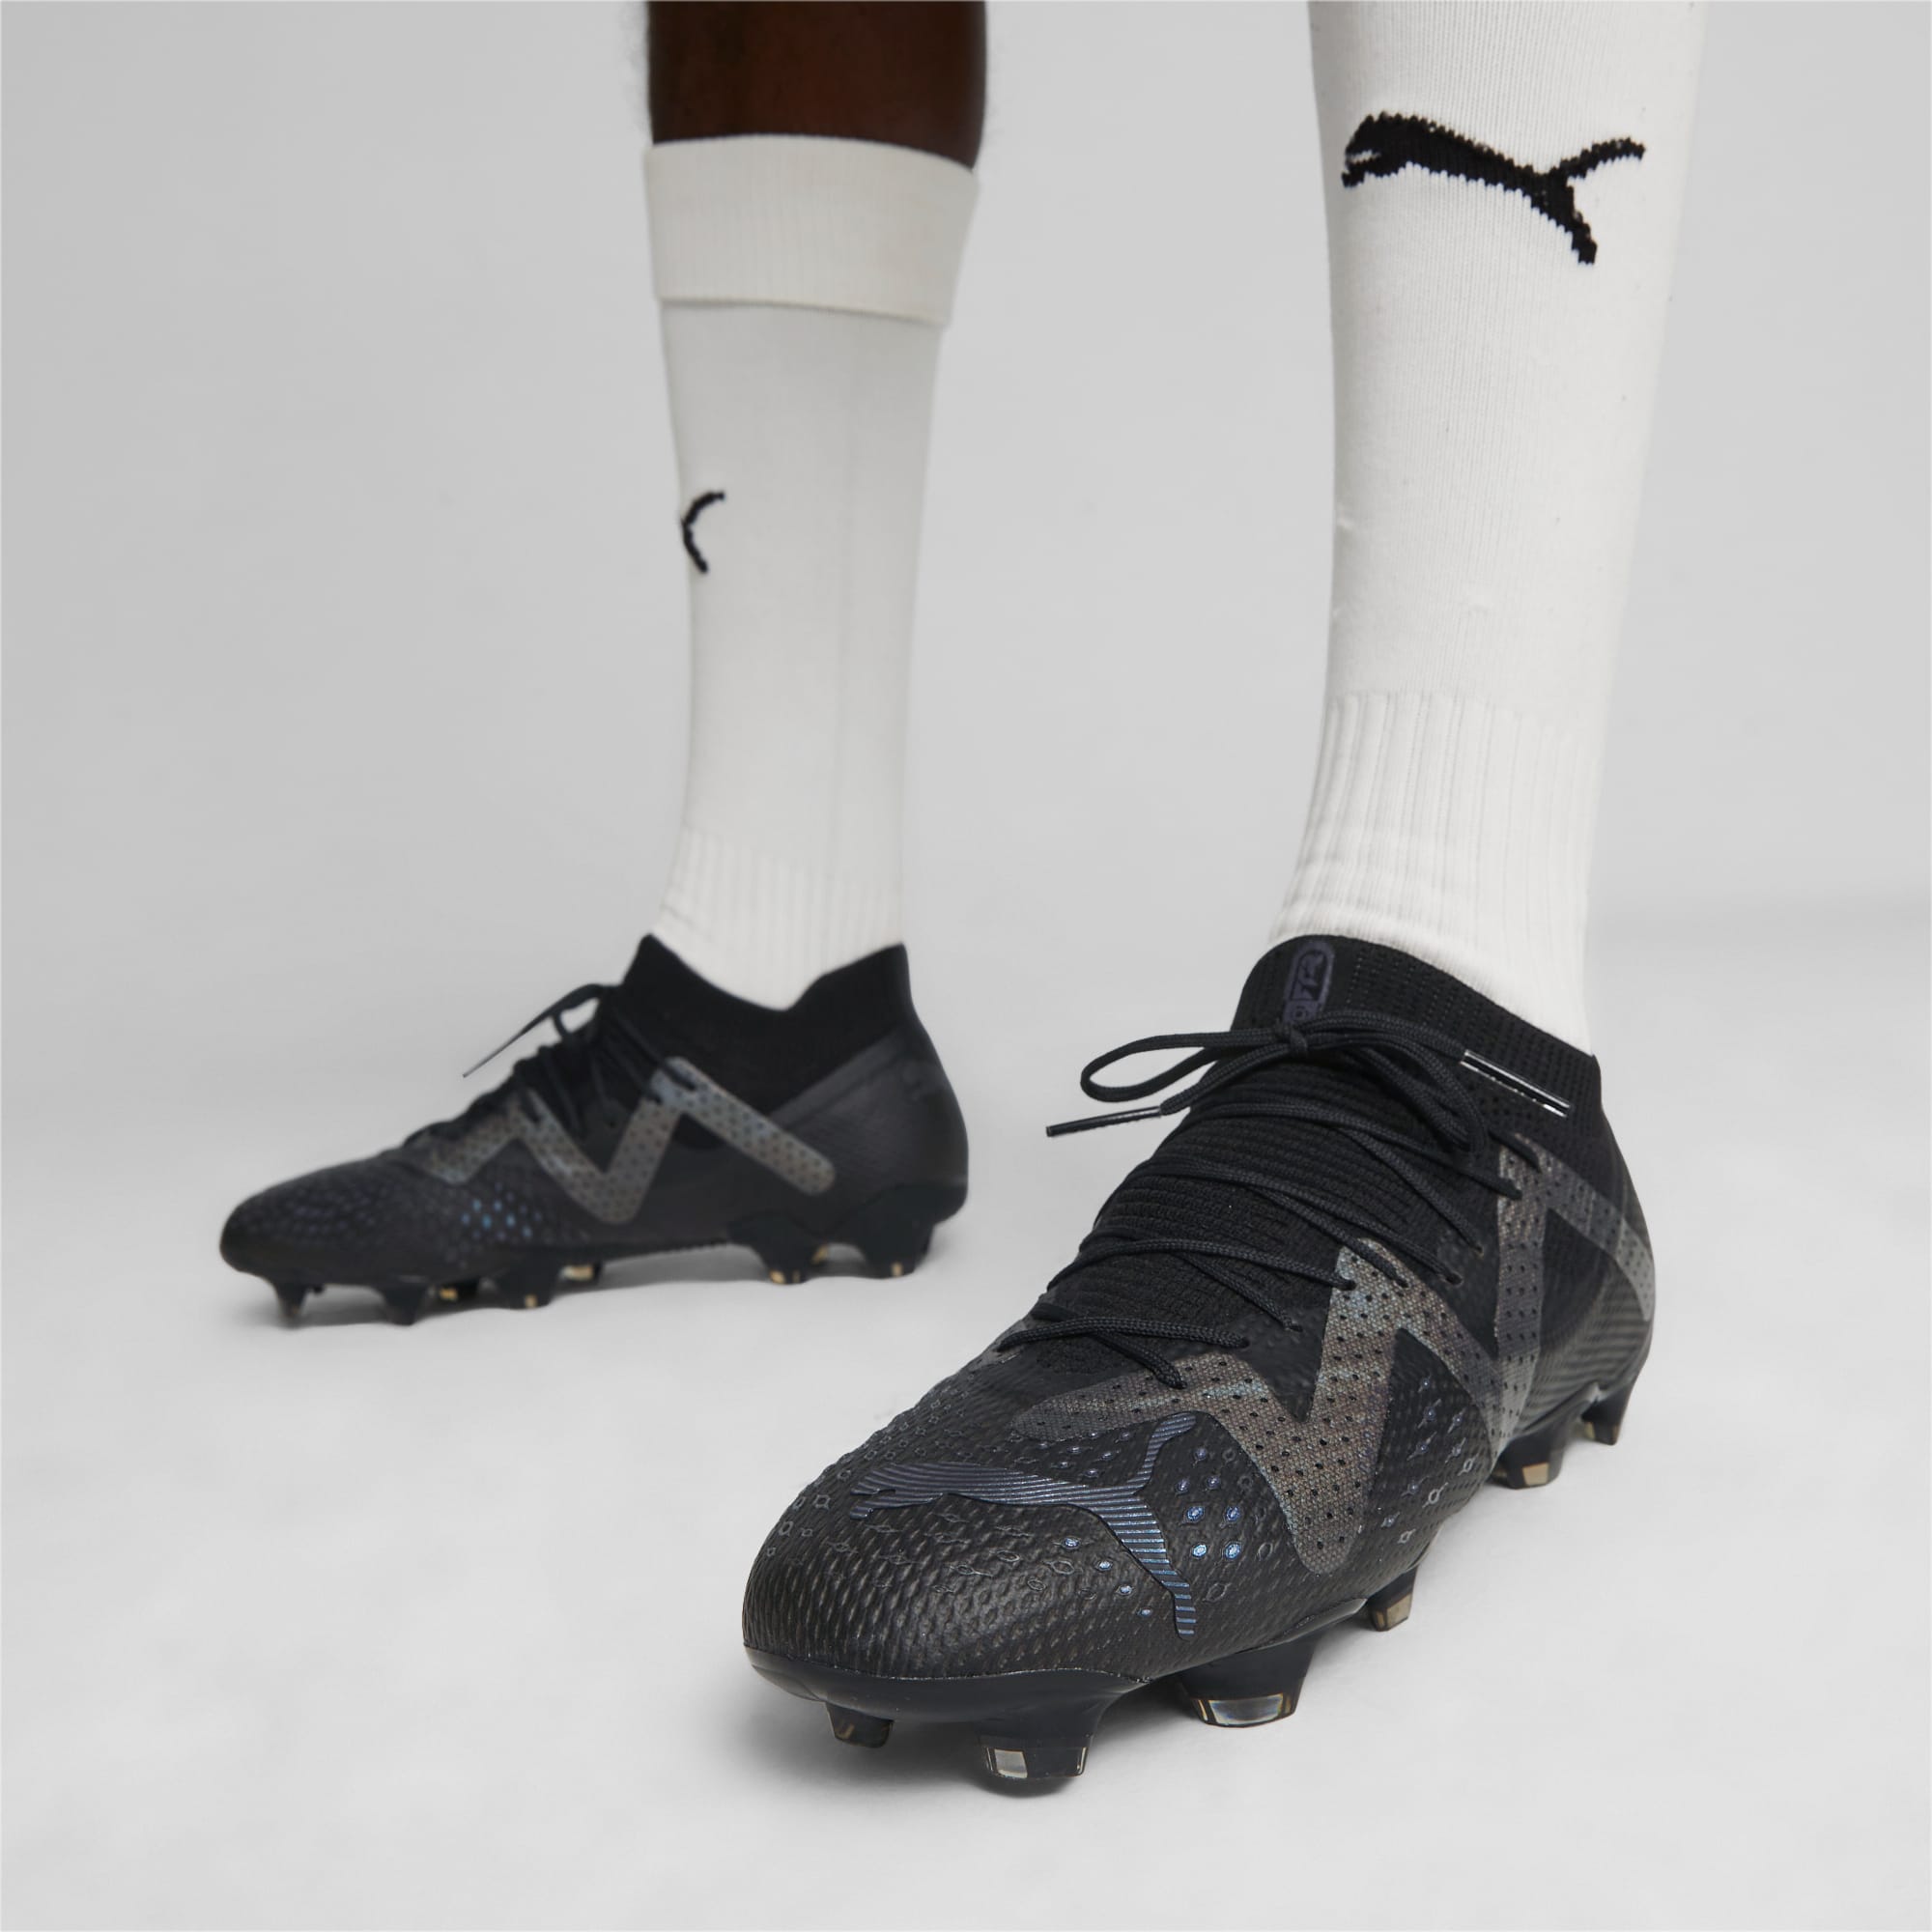 PUMA Chaussures De Football FUTURE ULTIMATE FG/AG Pour Homme, Noir/Gris